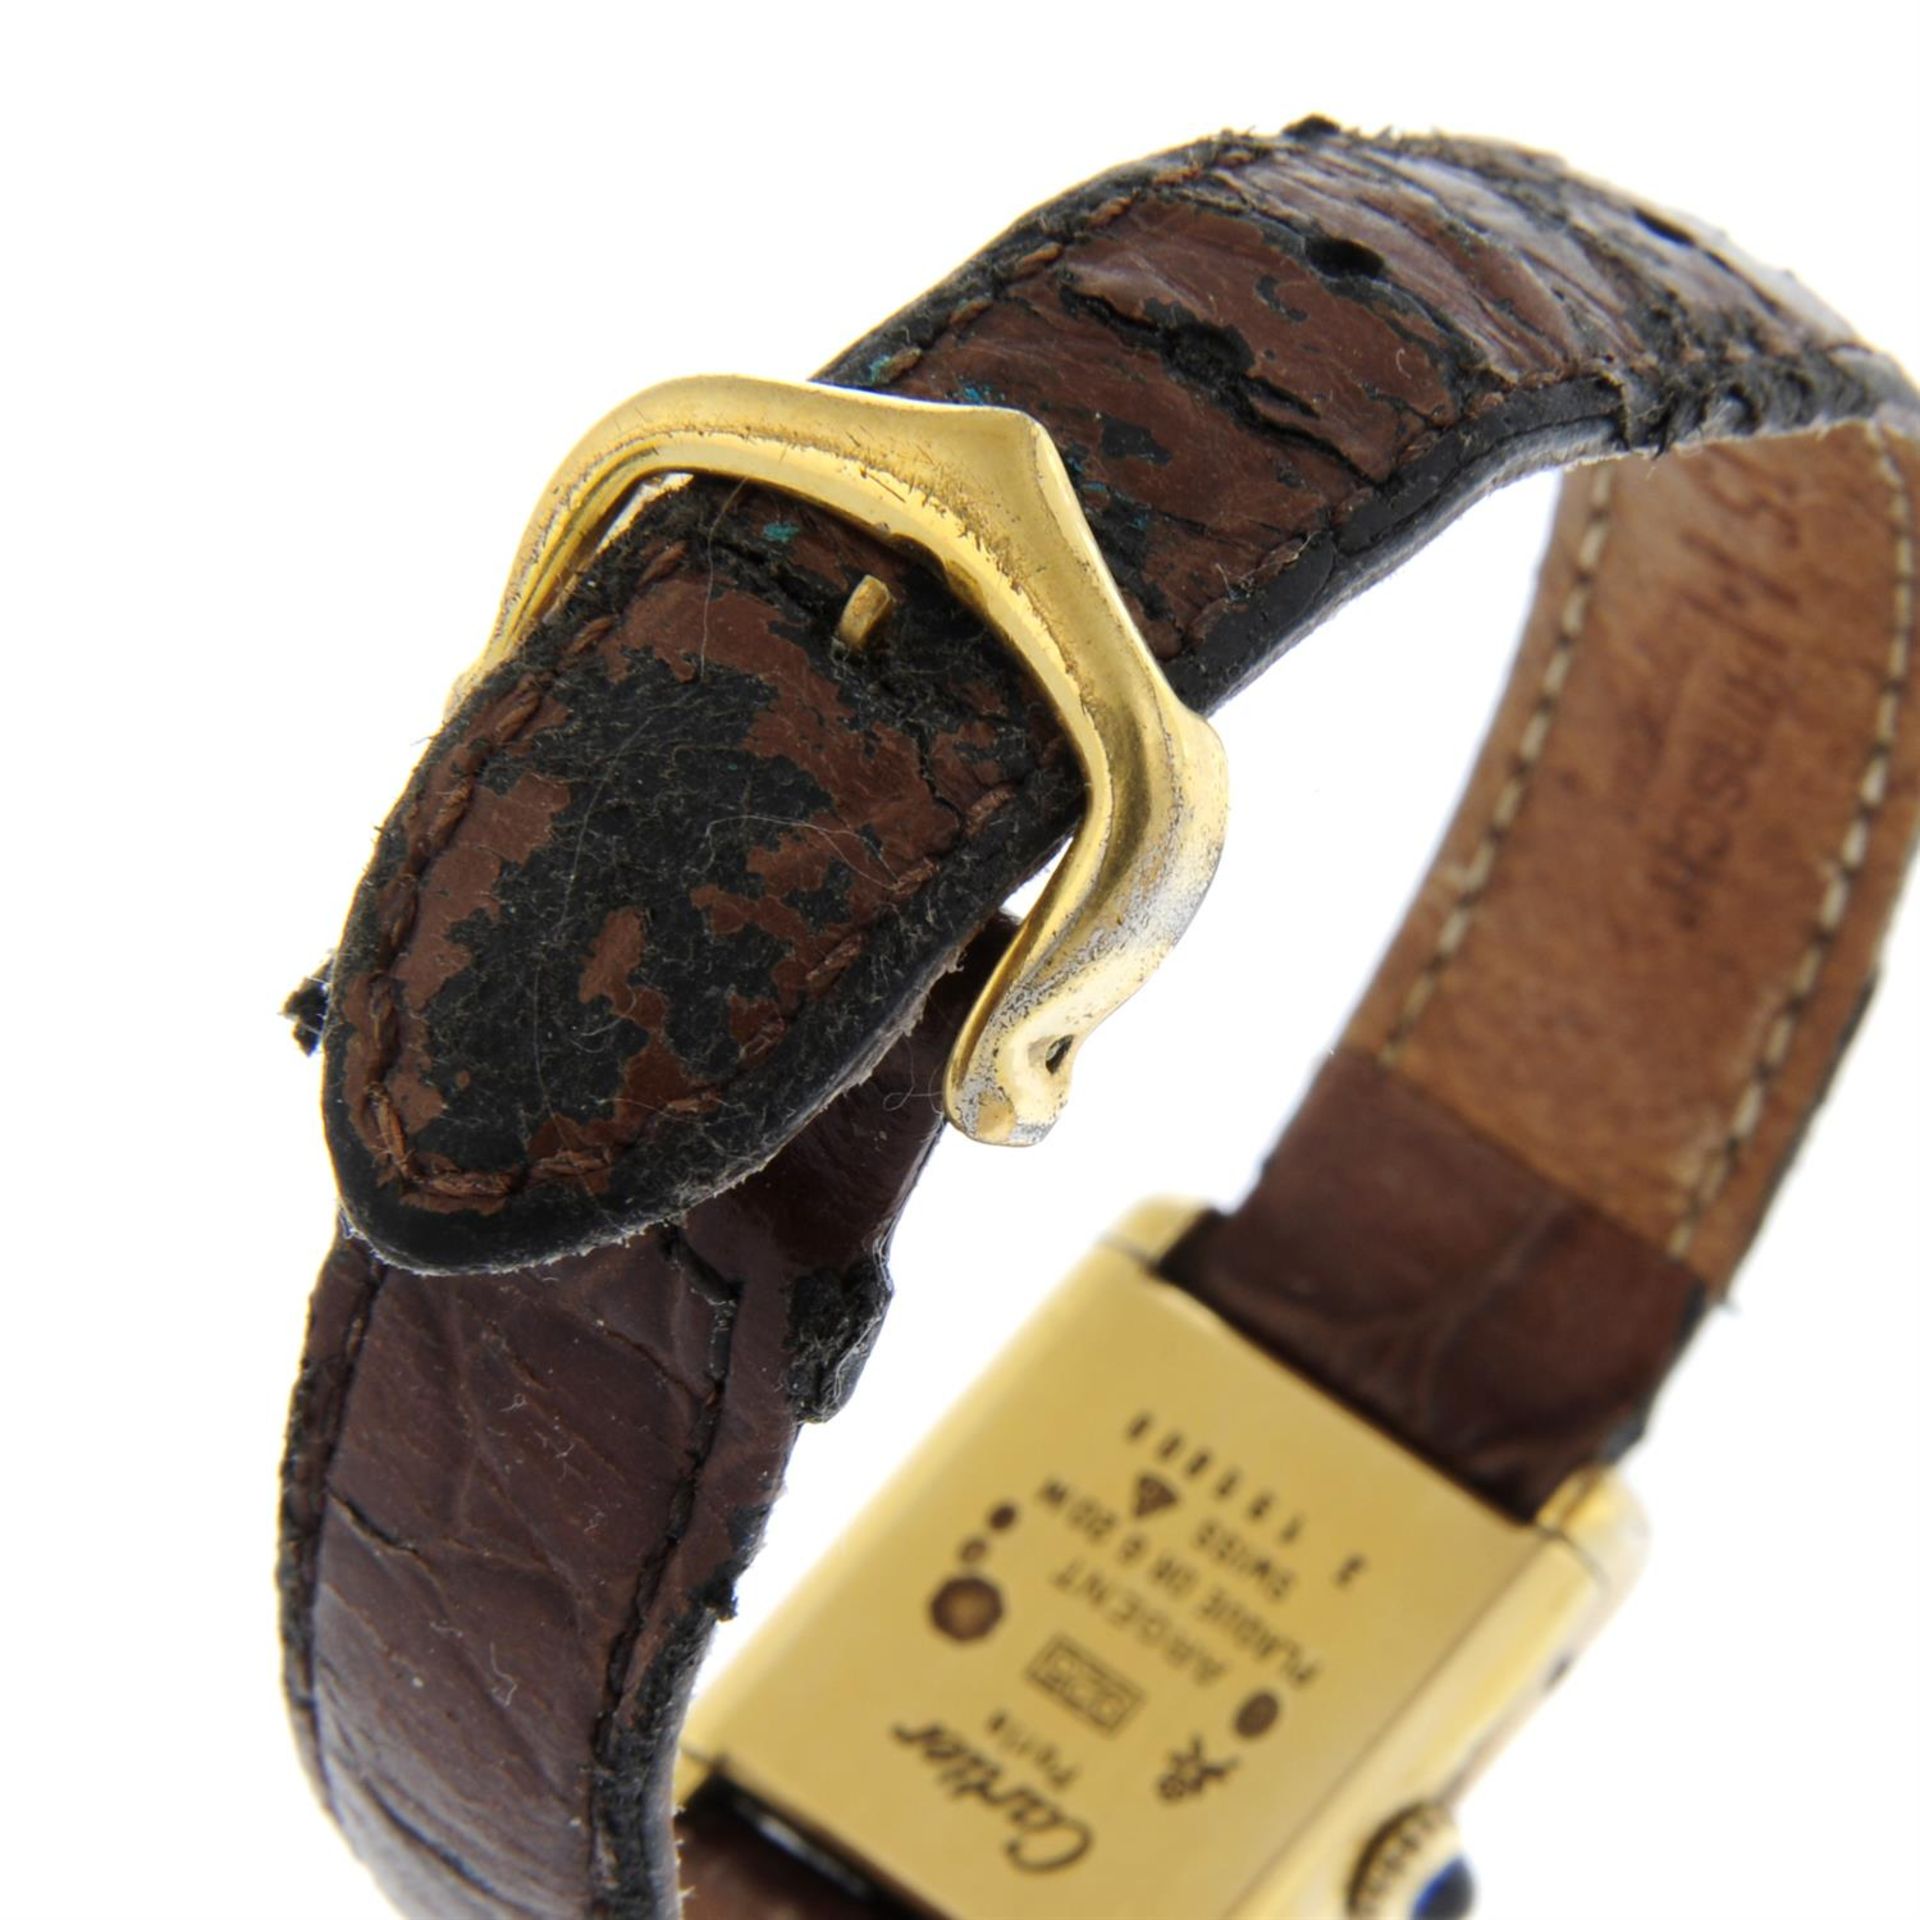 CARTIER - a gold plated silver Must de Cartier wrist watch, 20mm. - Image 2 of 4